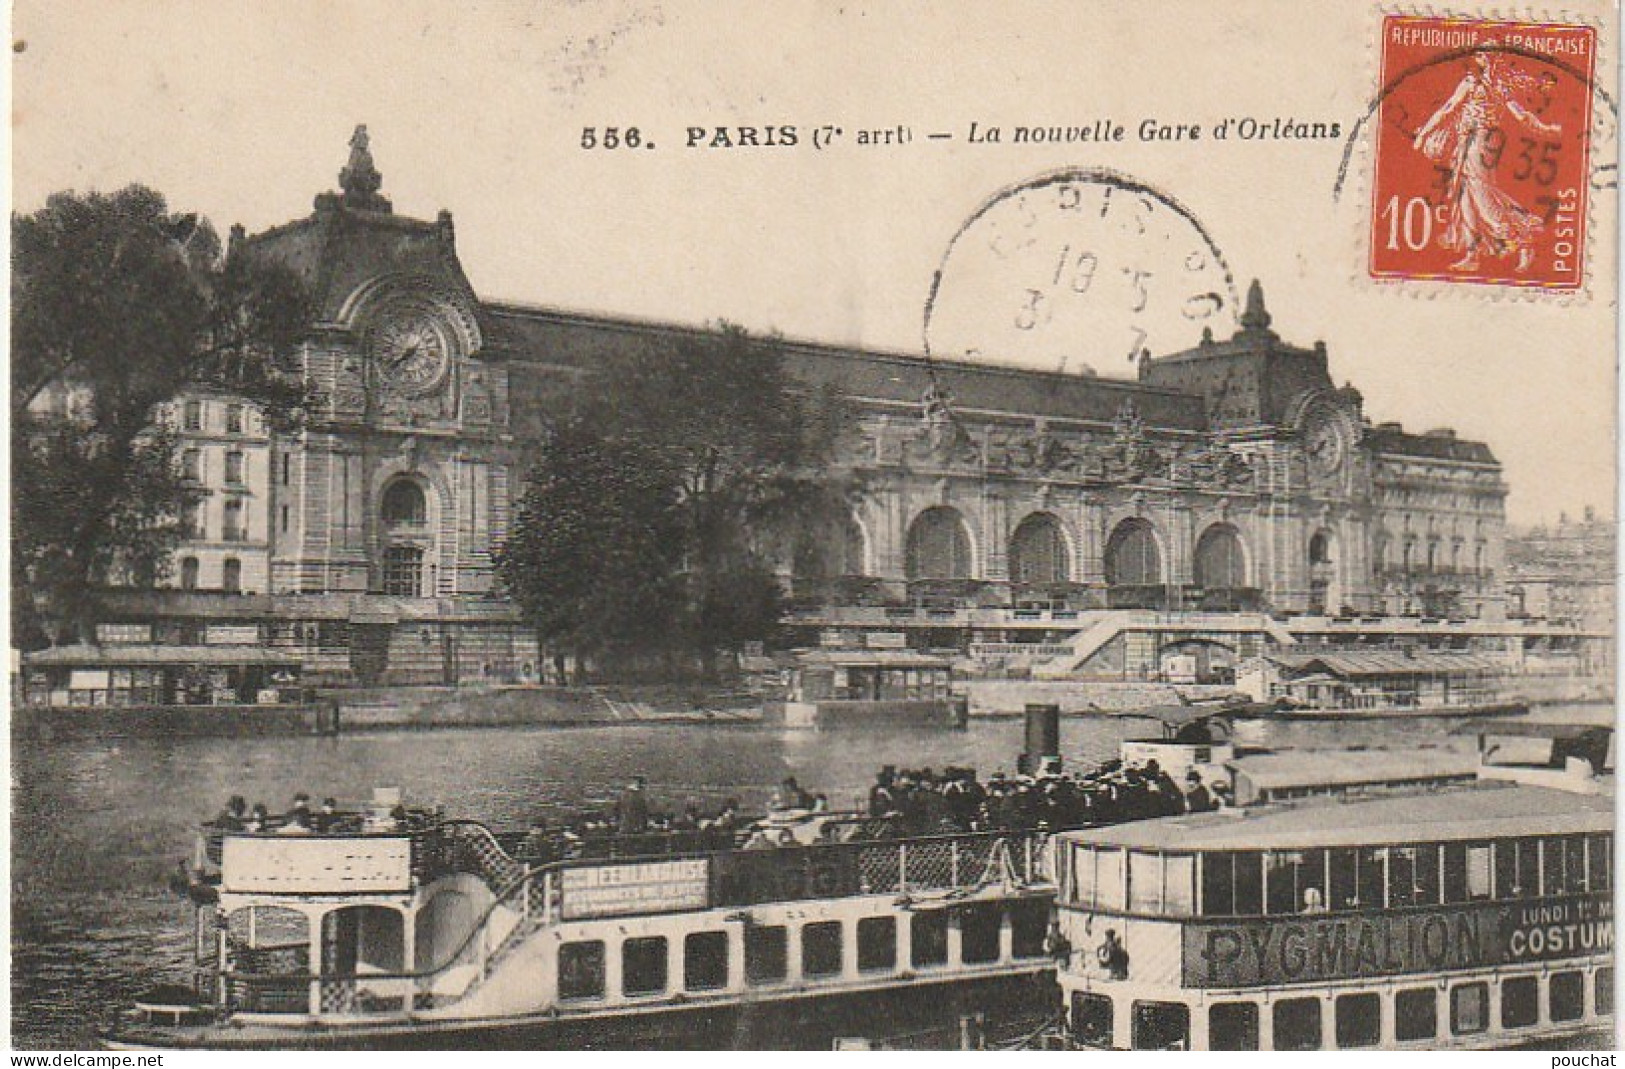 JA 4 - (75) PARIS - LA NOUVELLE GARE D' ORLEANS - BATEAUX PROMENADES - 2 SCANS - Métro Parisien, Gares